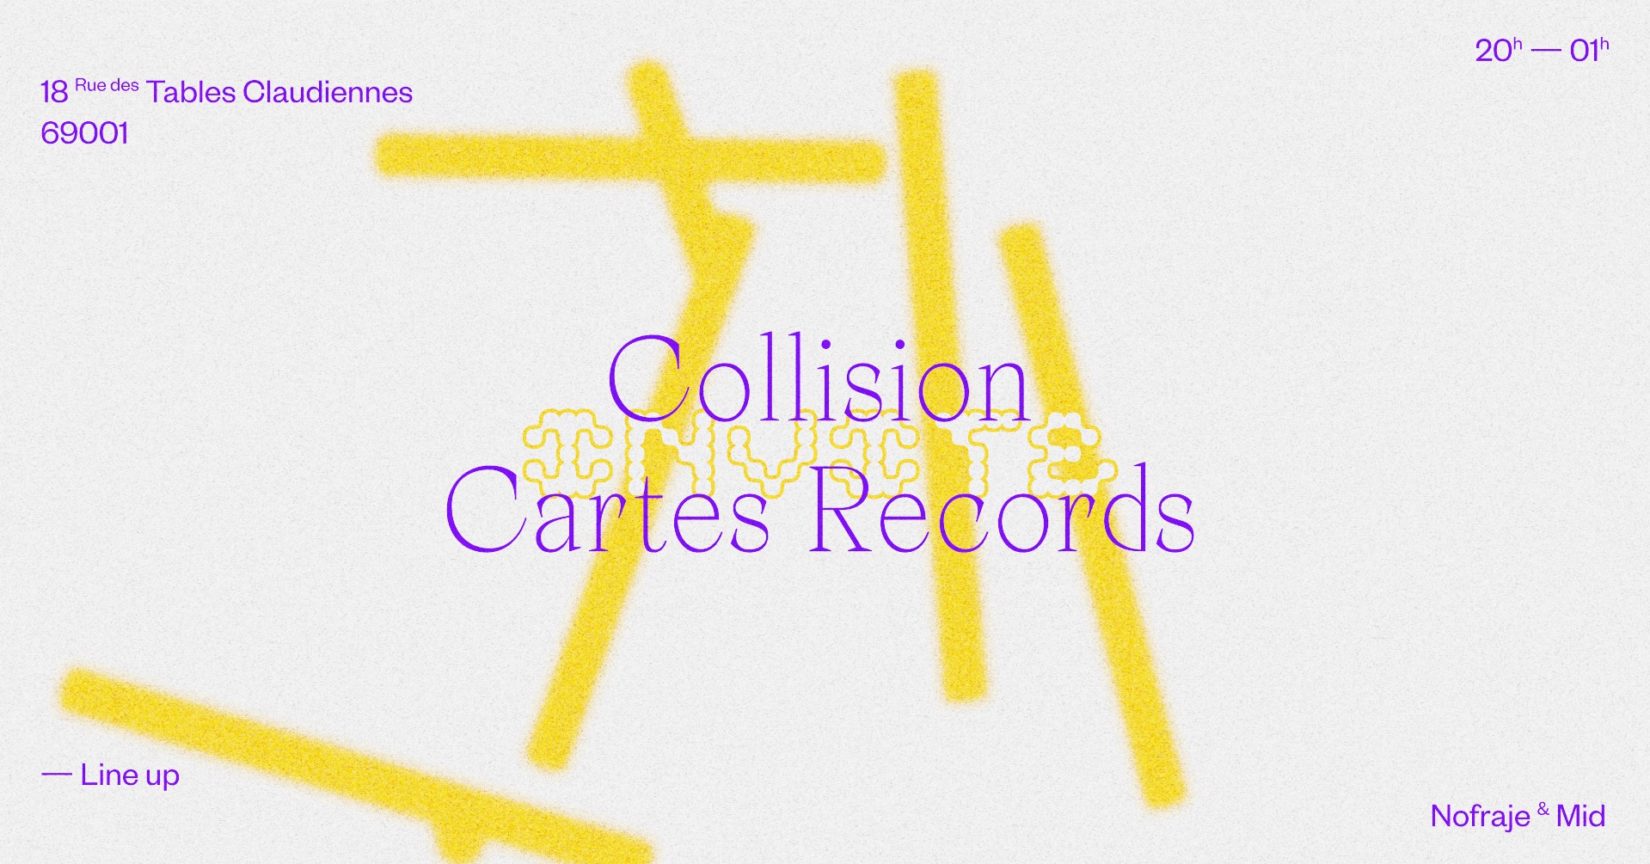 Collision invite Cartes Records